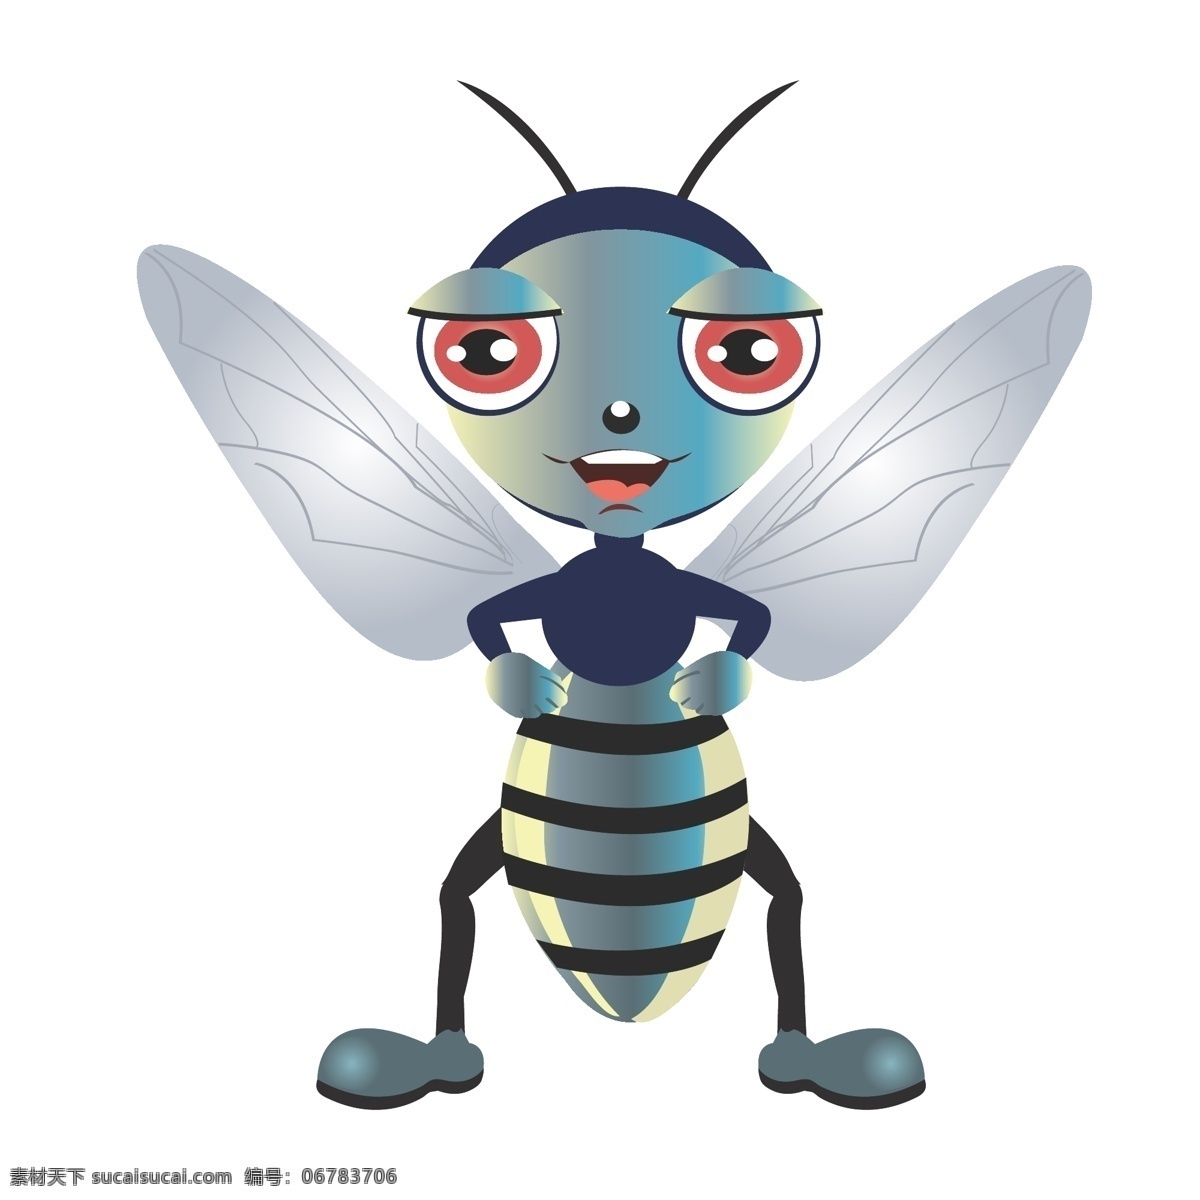 印花 矢量图 动物 服装图案 昆虫 蜜蜂 色彩 印花矢量图 面料图库 服装设计 图案花型